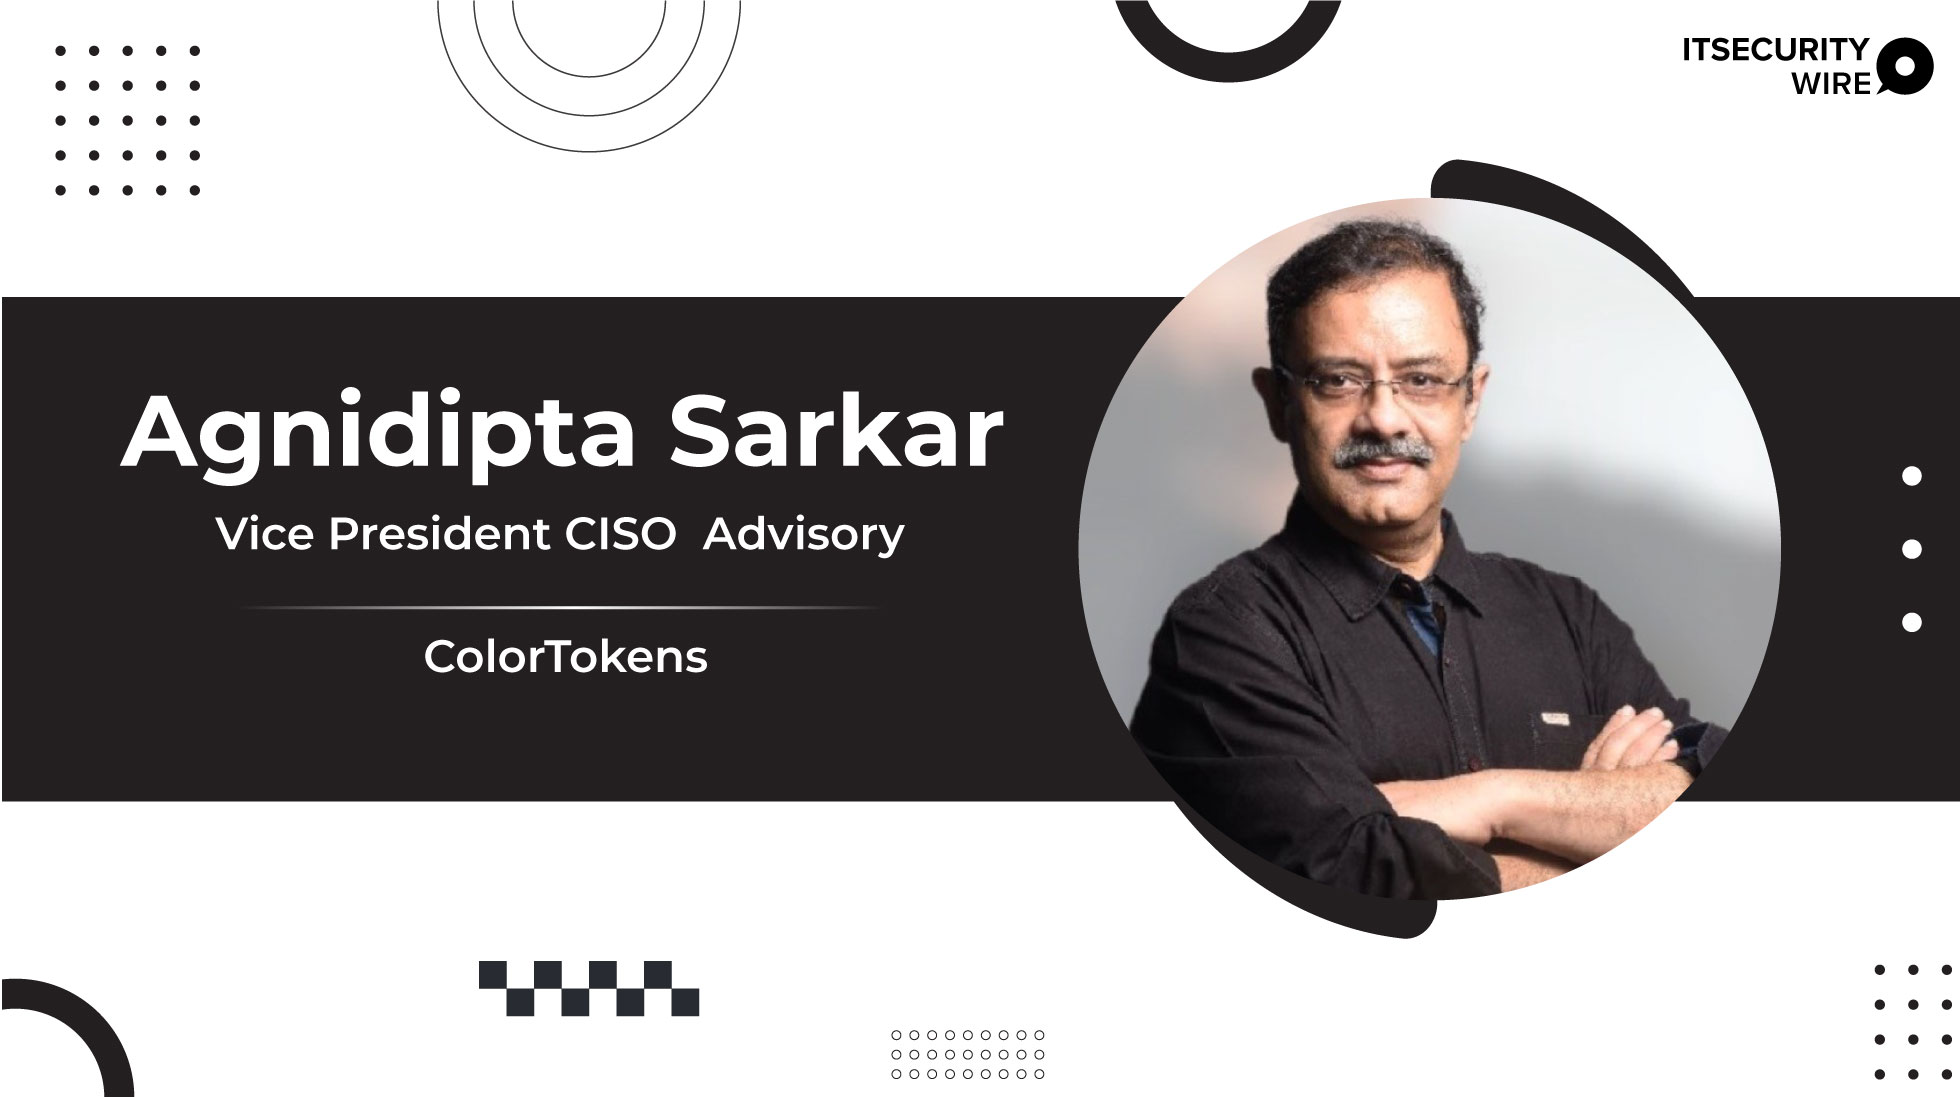 ColorTokens Welcomes Agnidipta Sarkar as Vice President CISO Advisory